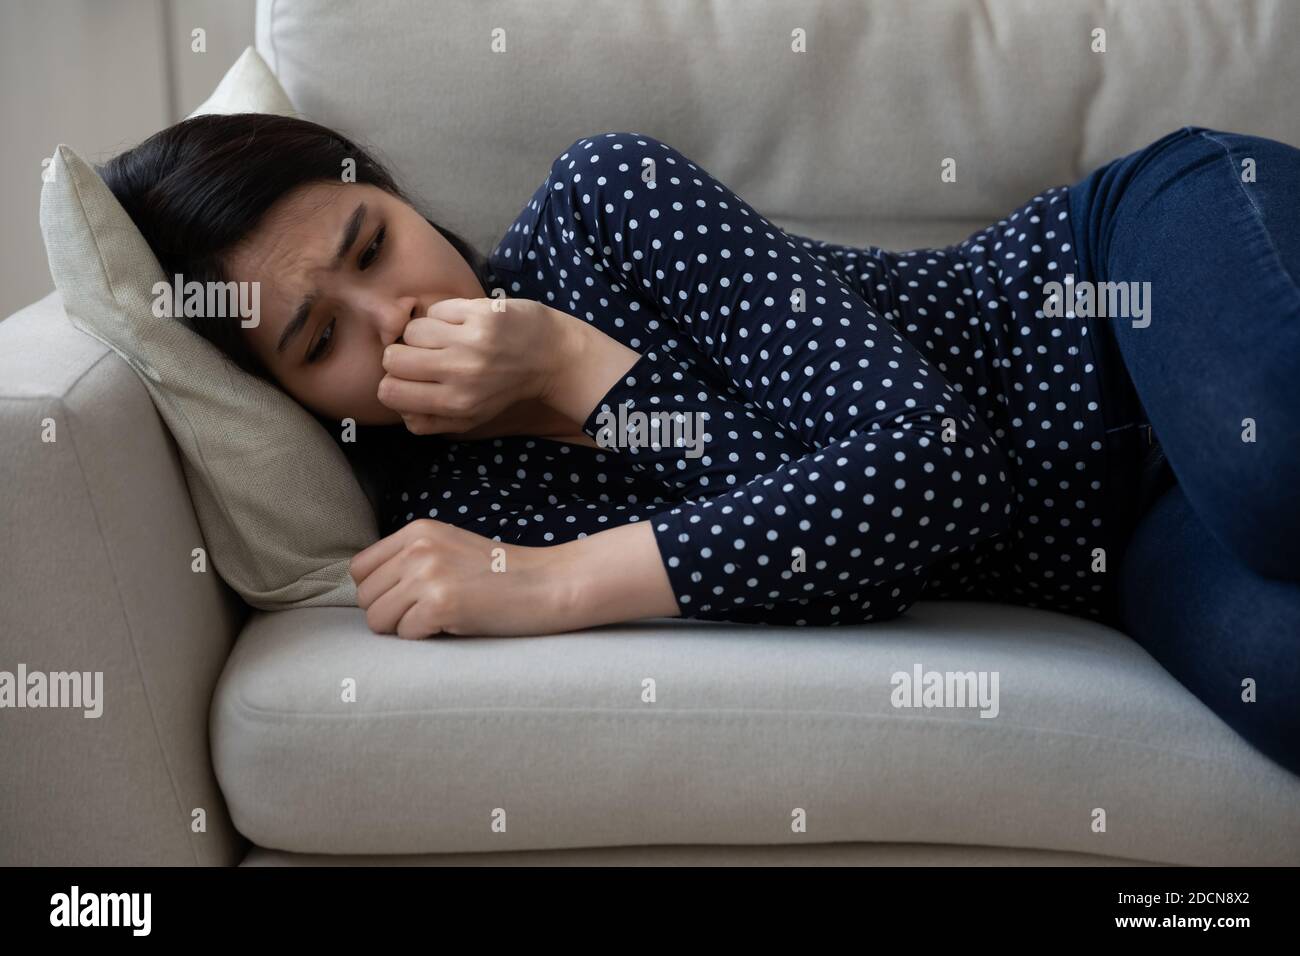 Malheureux déprimé asiatique jeune femme couché sur le canapé seul, pleurant Banque D'Images